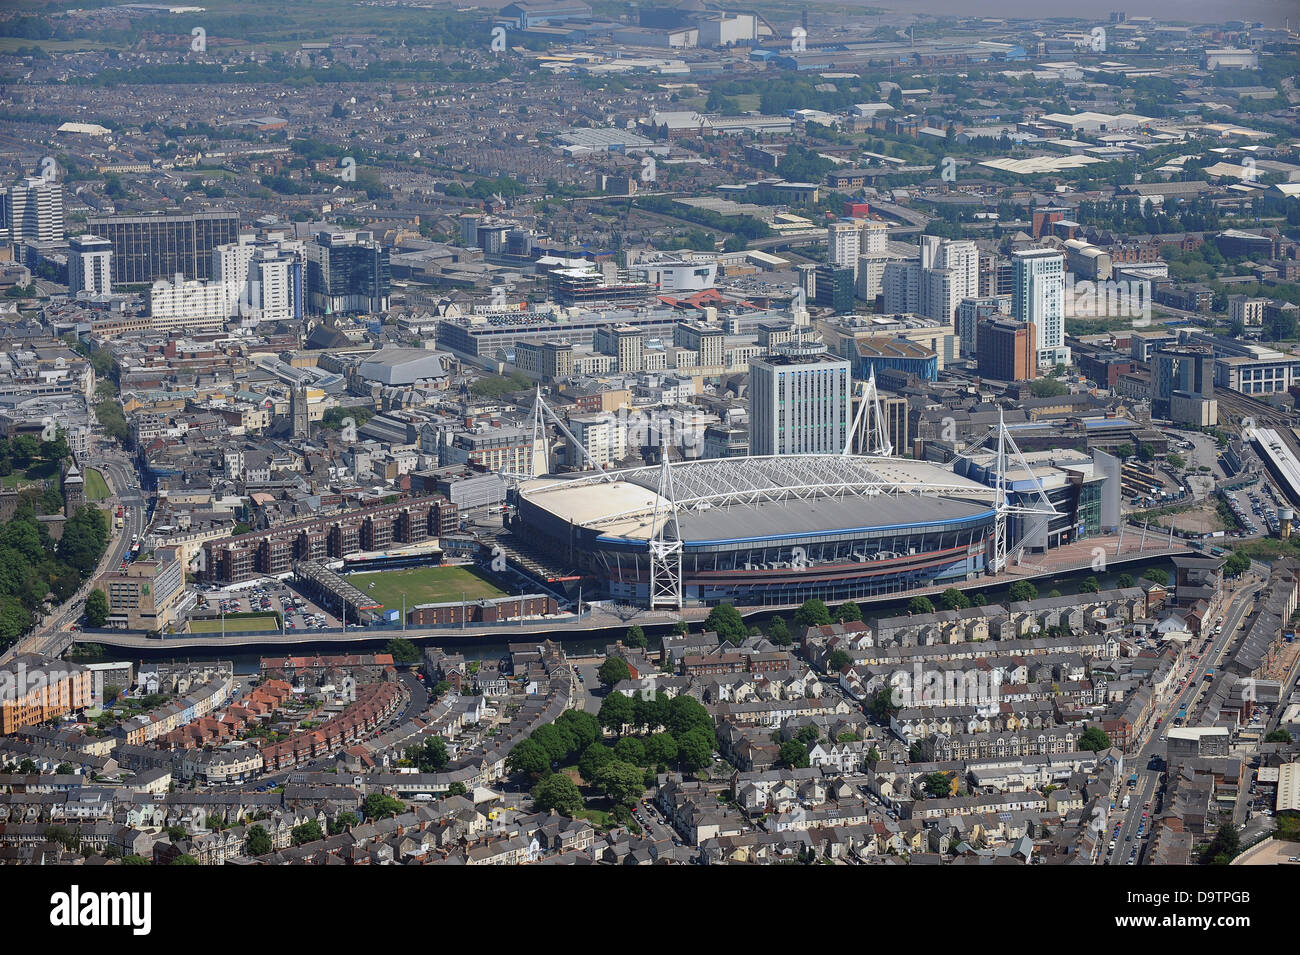 Aerial image of Cardiff City centre and Millenium stadium Stock Photo